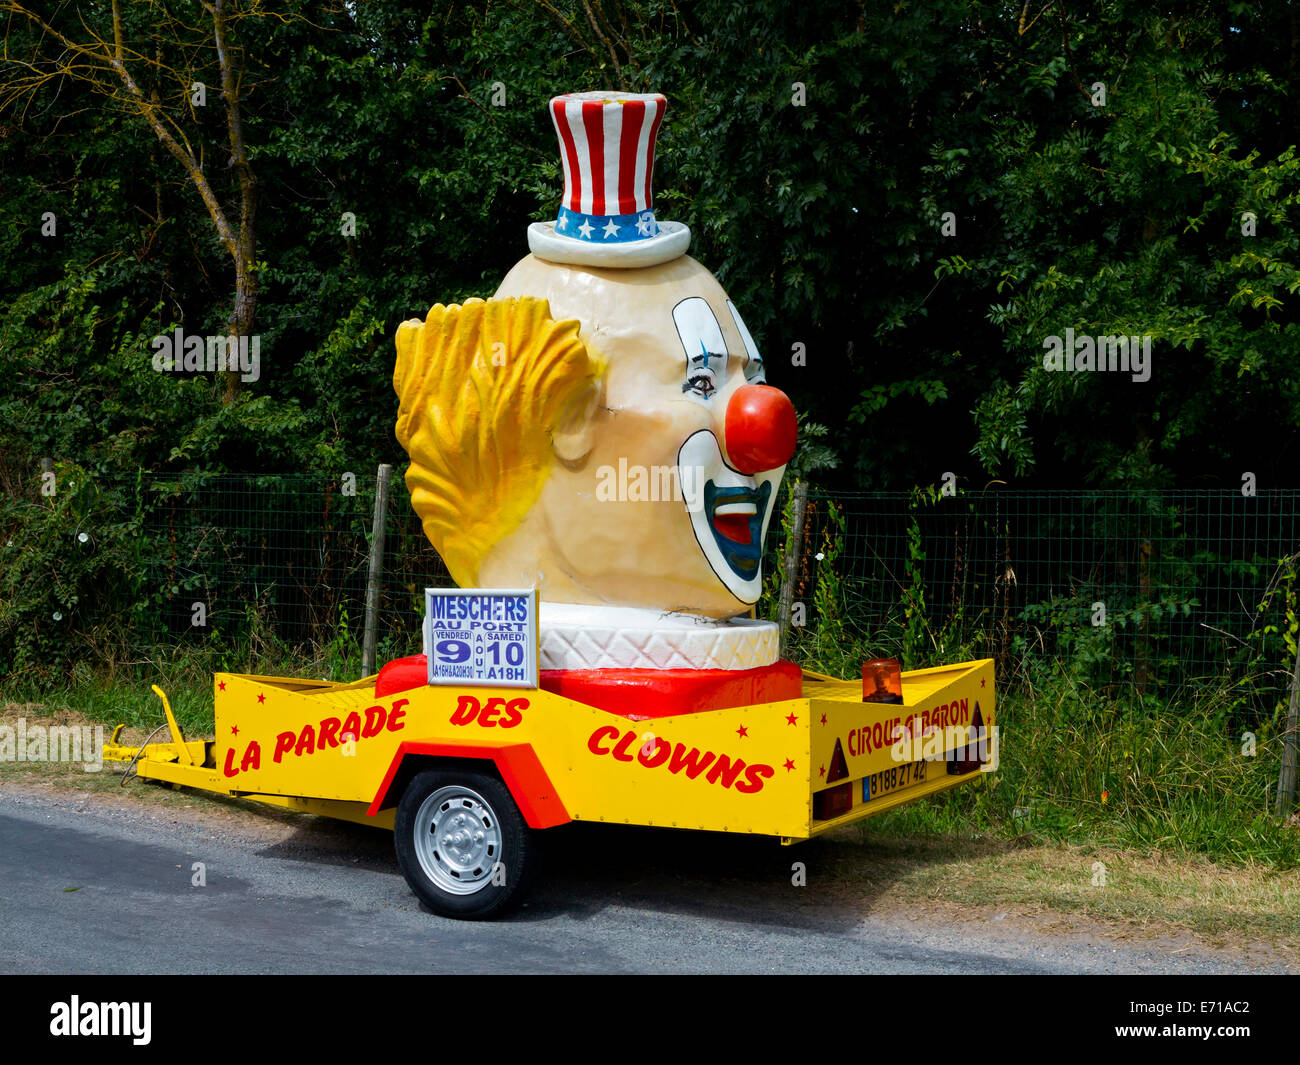 Tête de clown sur une remorque utilisée pour la Parade des clowns appartenant à un cirque Français Banque D'Images